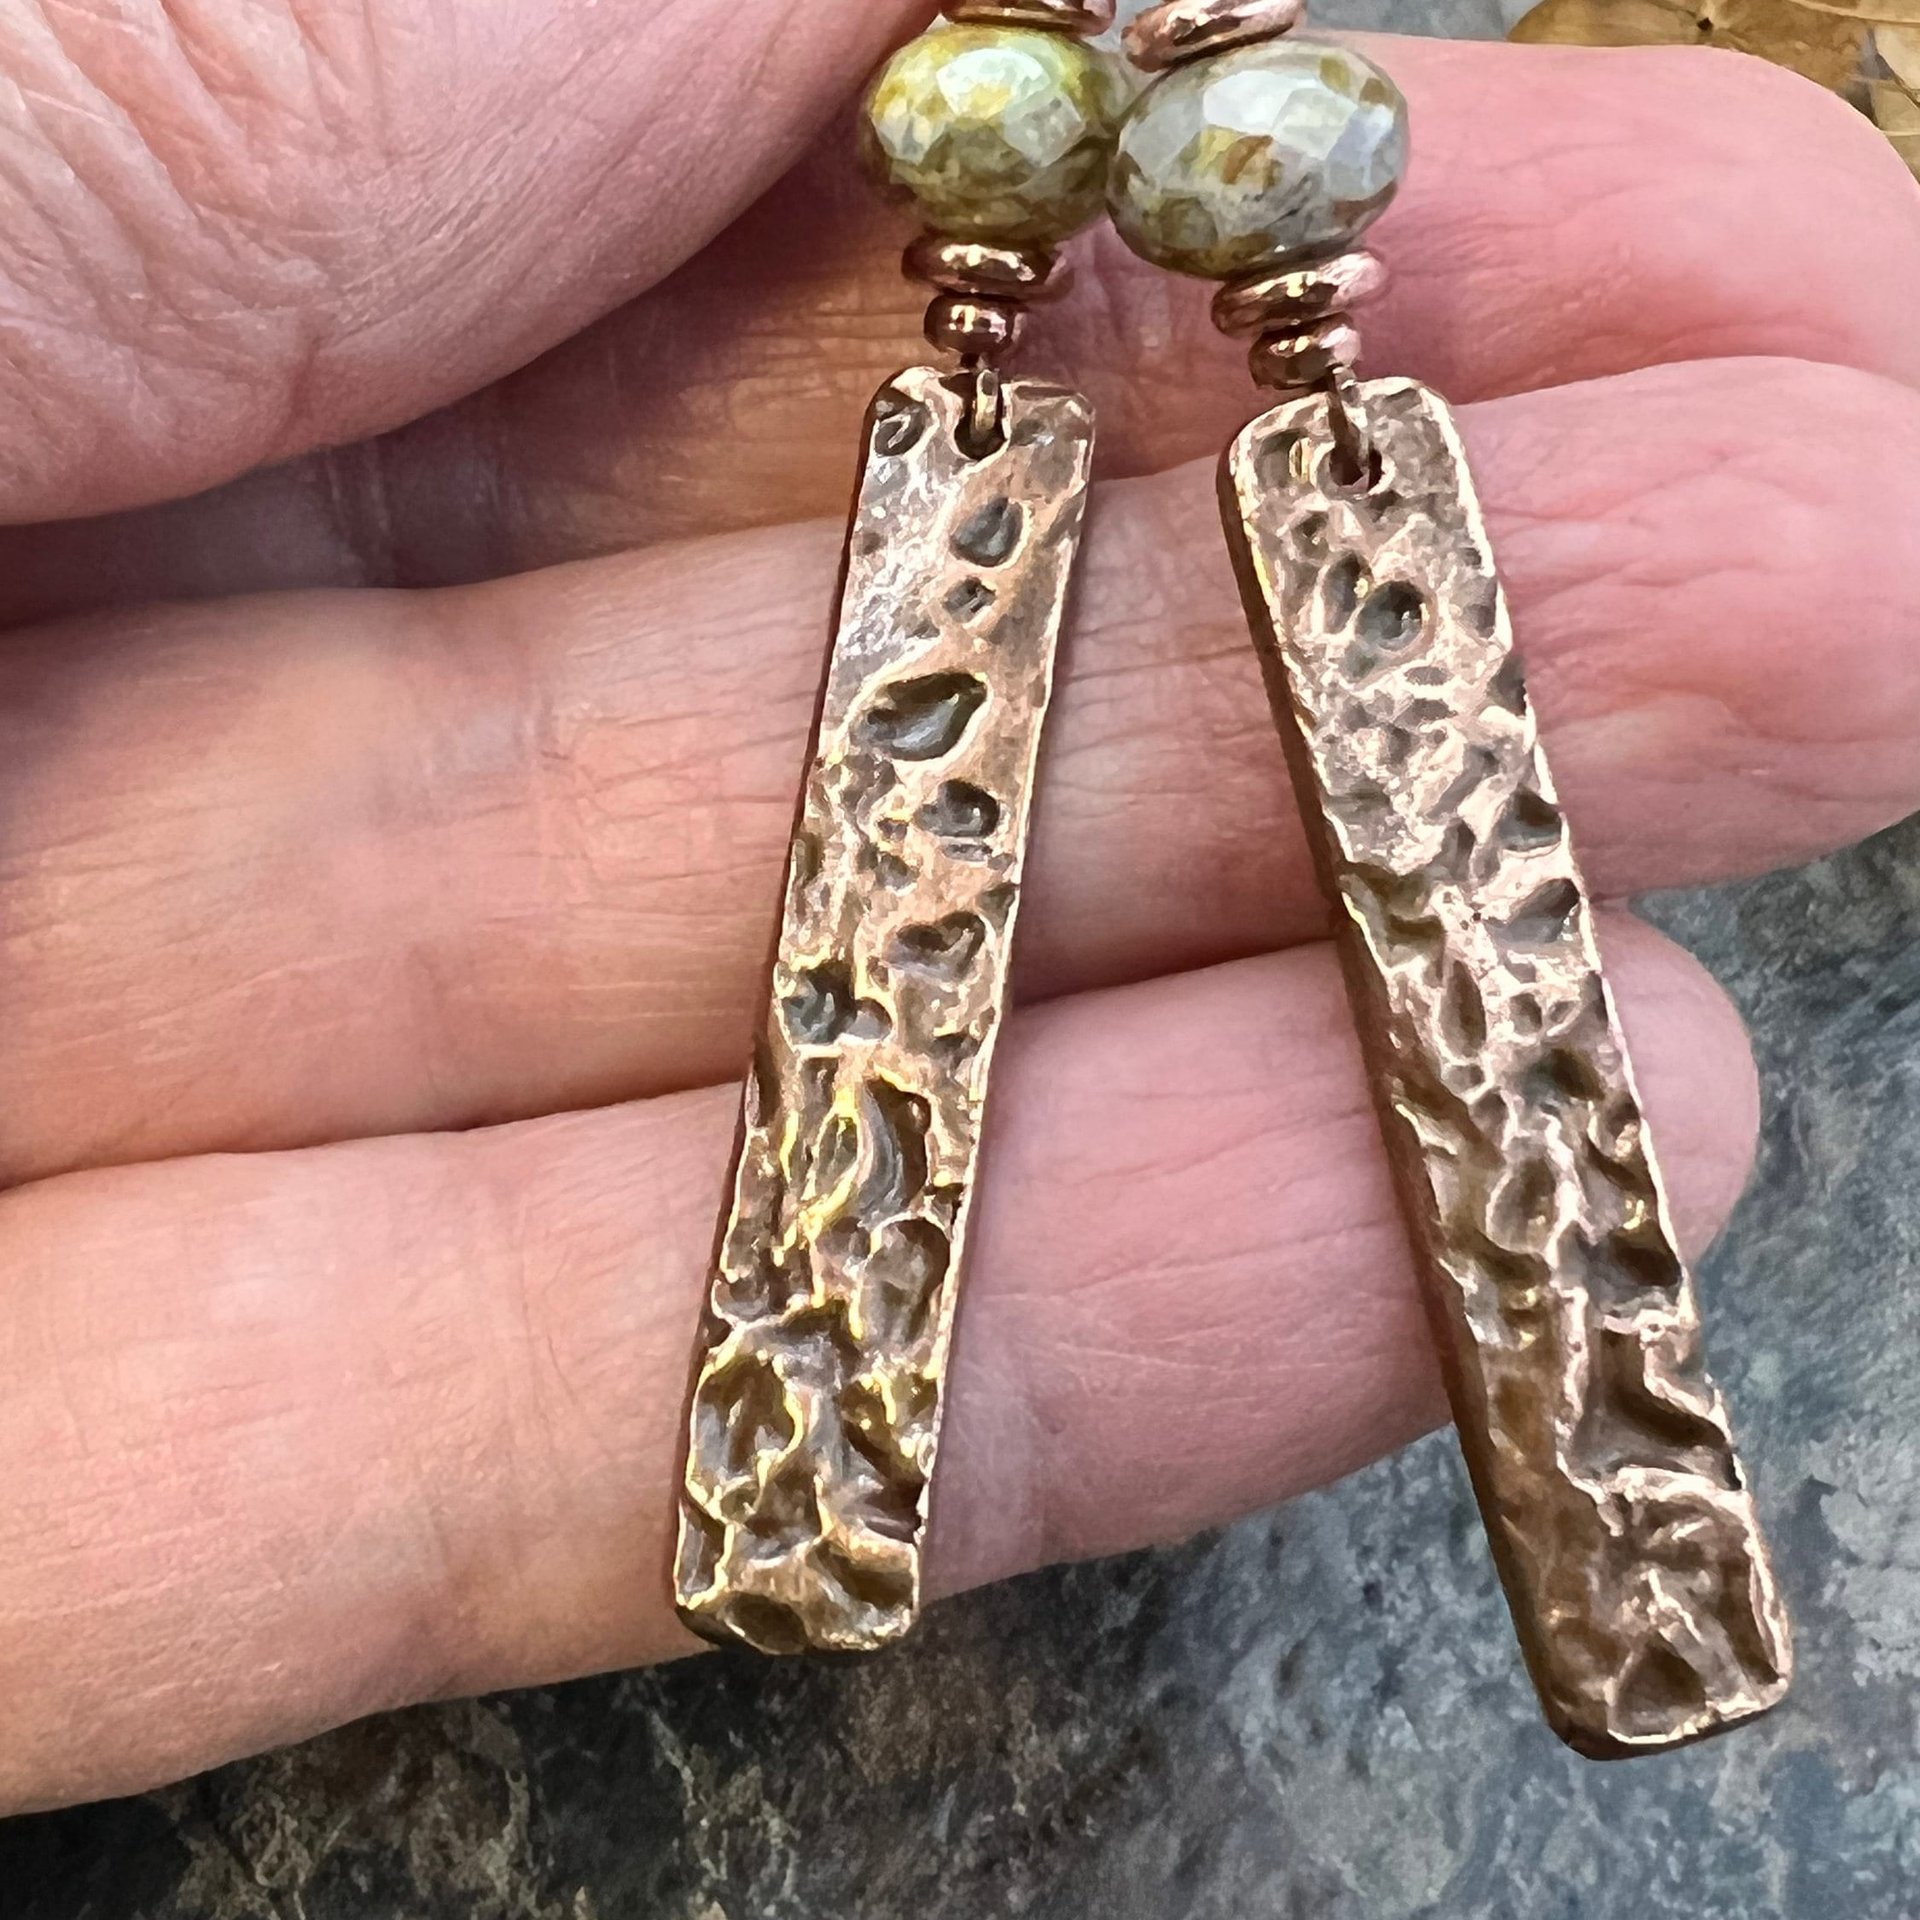 Copper Textured Earrings, Czech Glass Beads, Hypoallergenic Ear Wires, Earthy Rustic,  Light Long Skinny Earrings, Boho Earthy Style